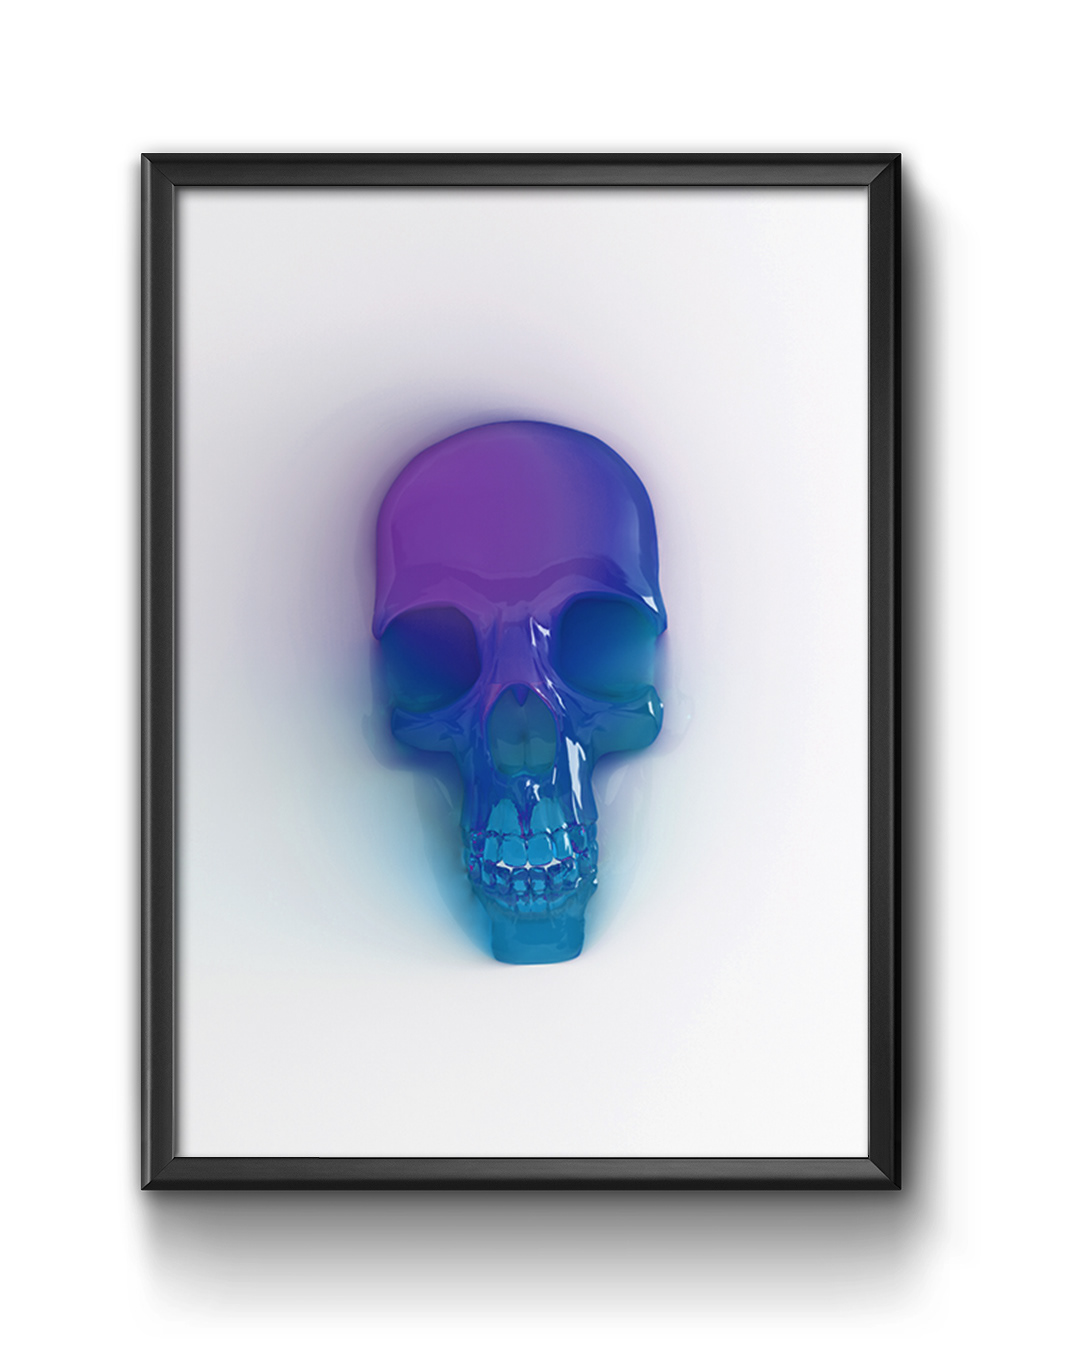 skull death